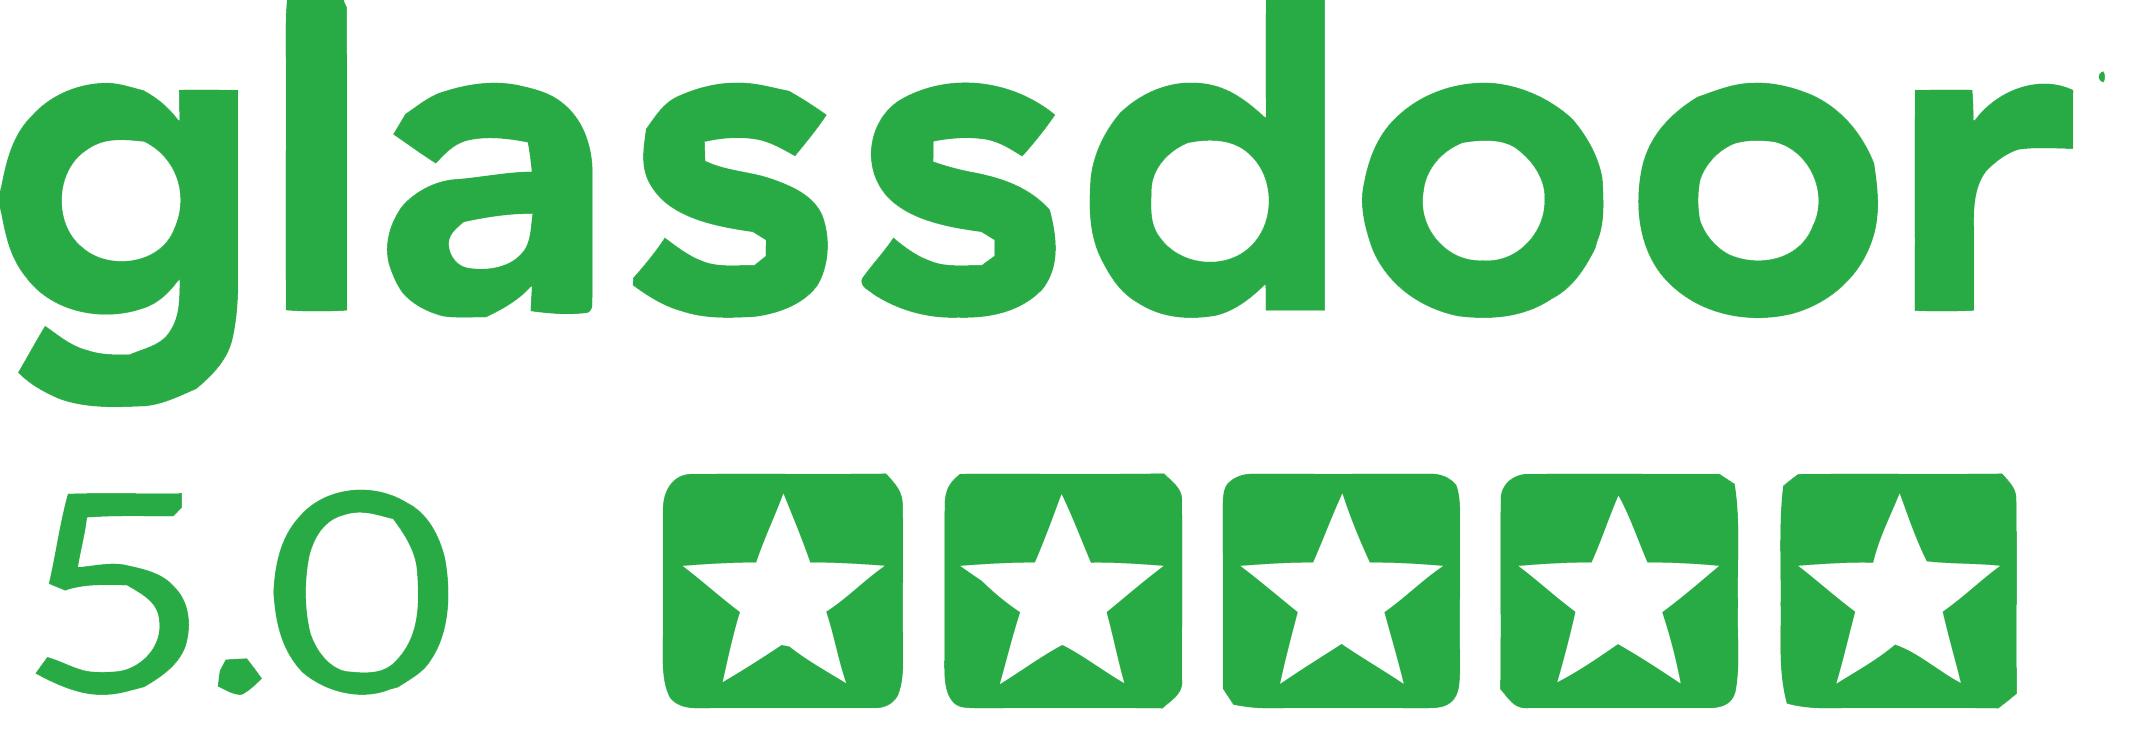 glassdoor rating